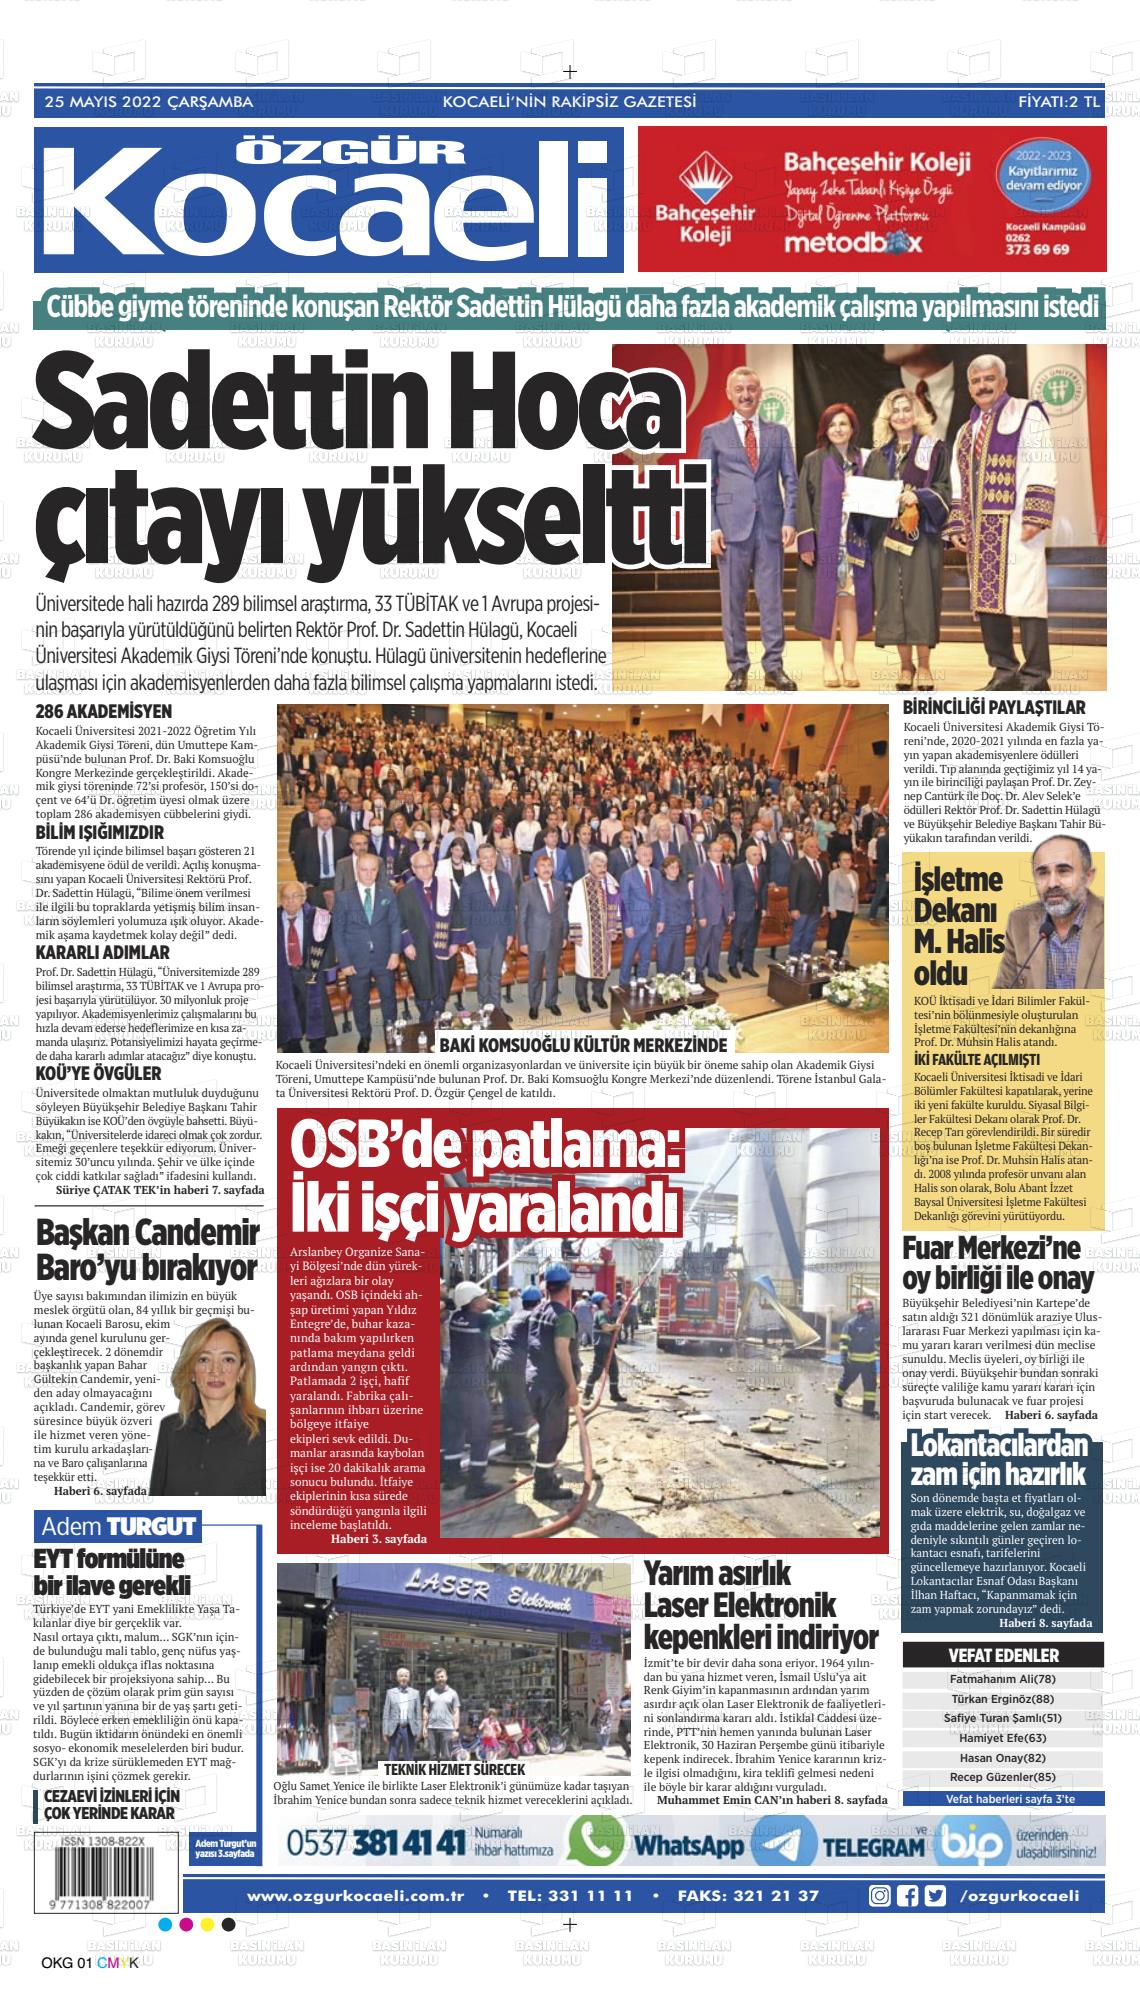 25 Mayıs 2022 Özgür Kocaeli Gazete Manşeti